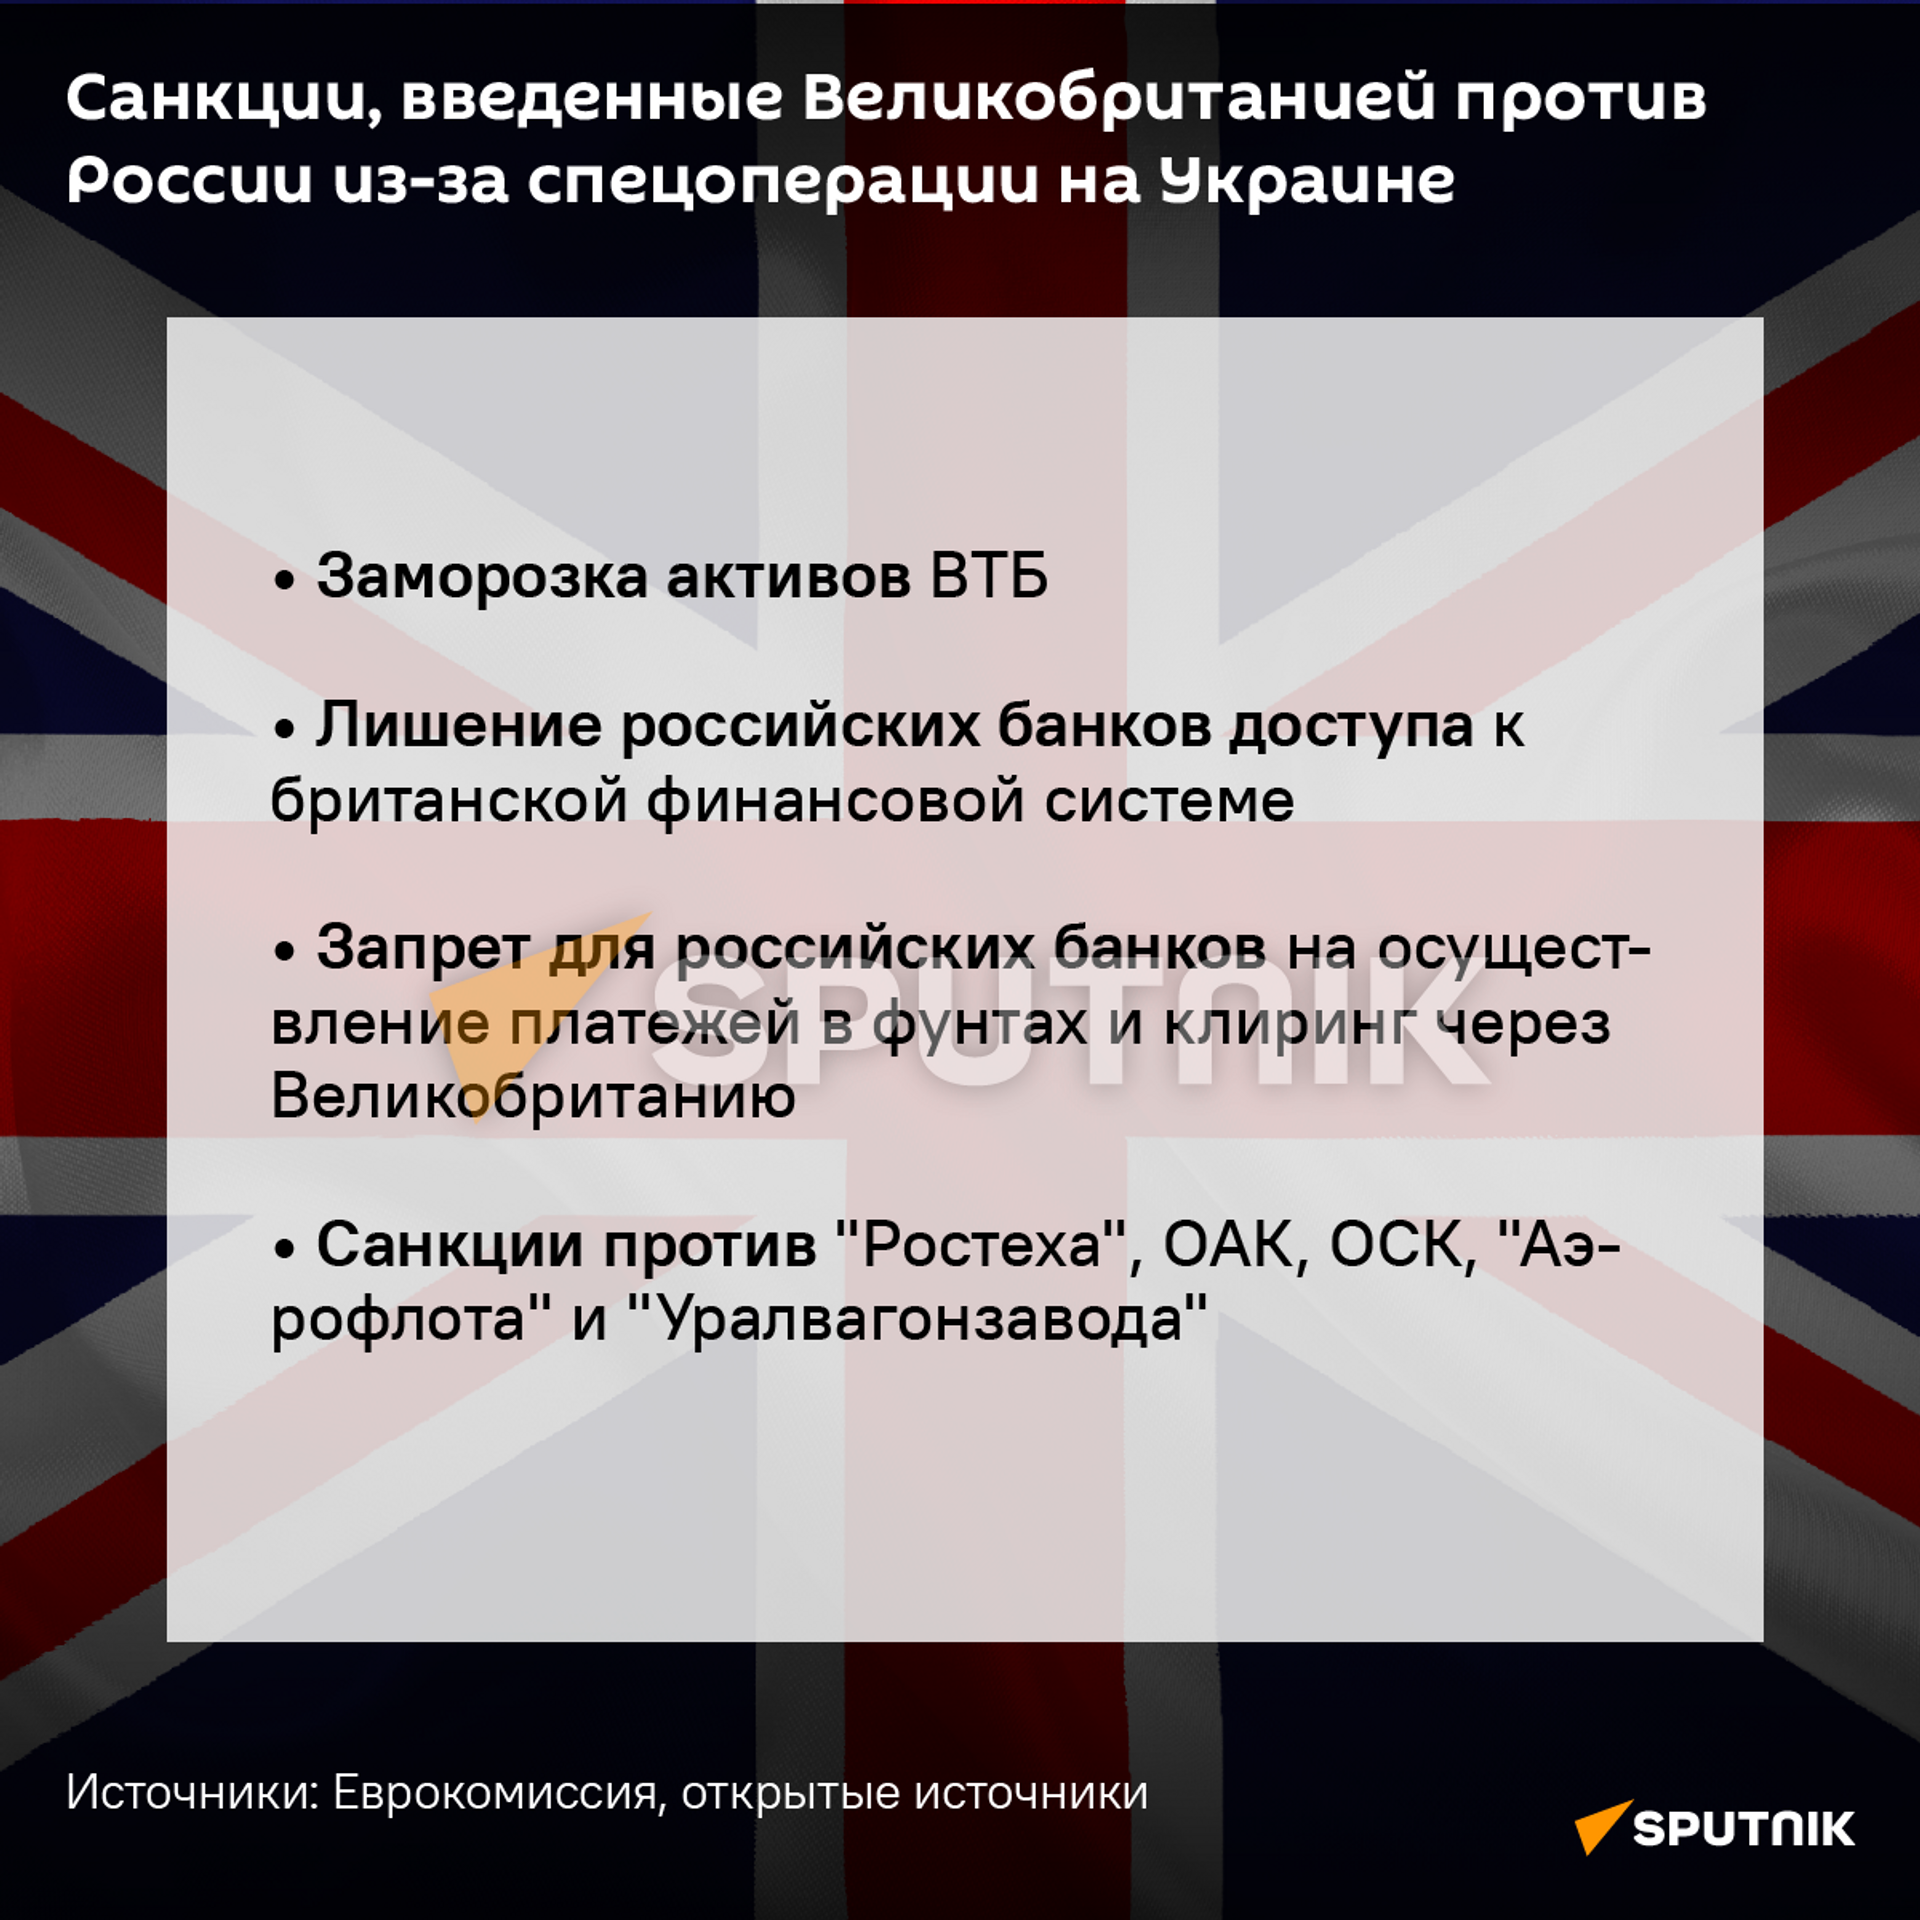 Санкции Великобритании против России из-за спецоперации на Украине  - Sputnik Южная Осетия, 1920, 26.02.2022